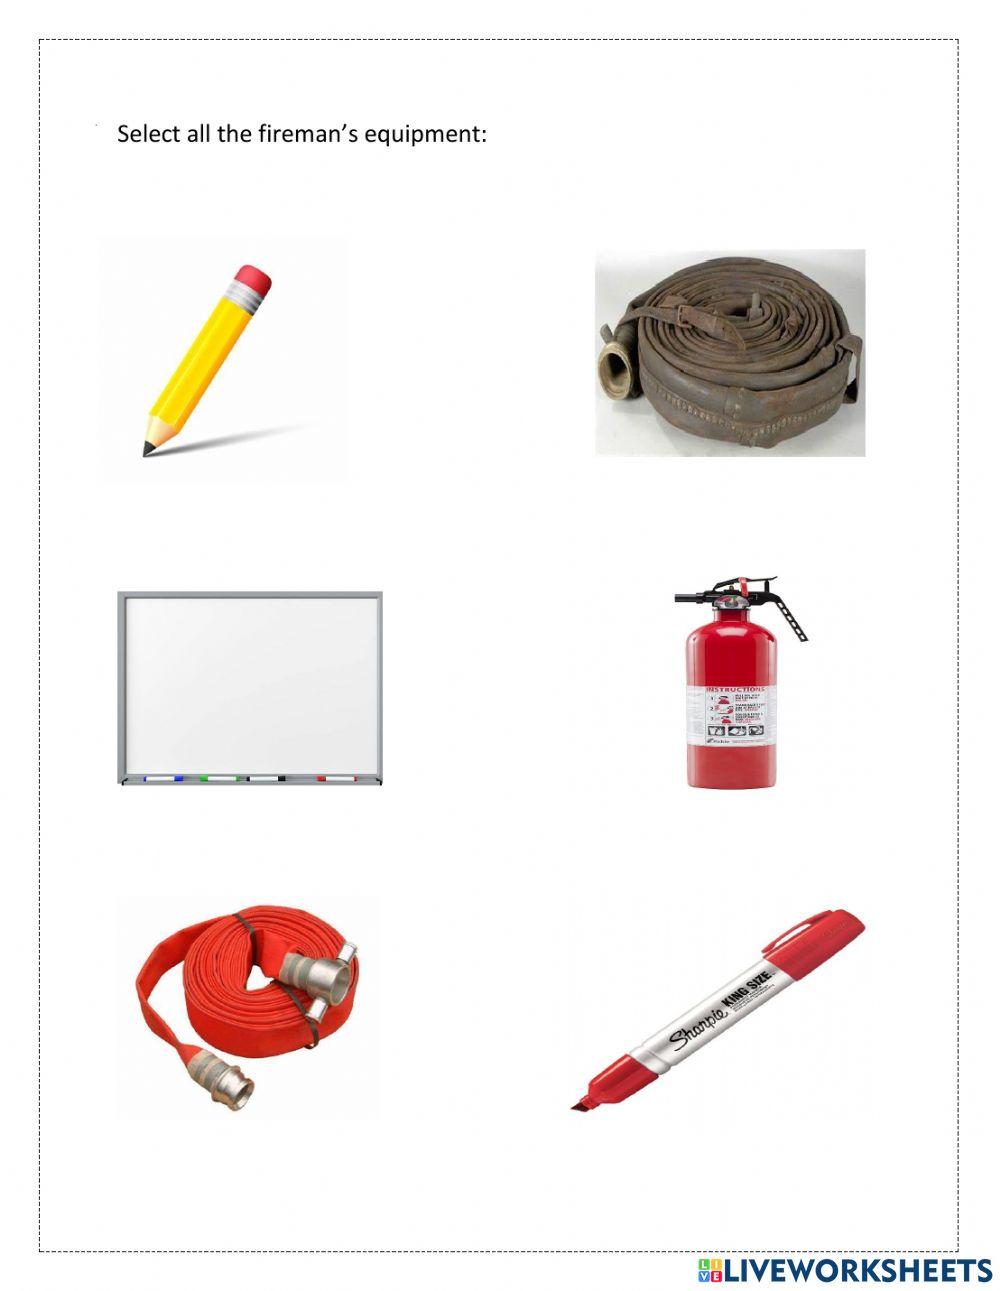 Fireman's equipment